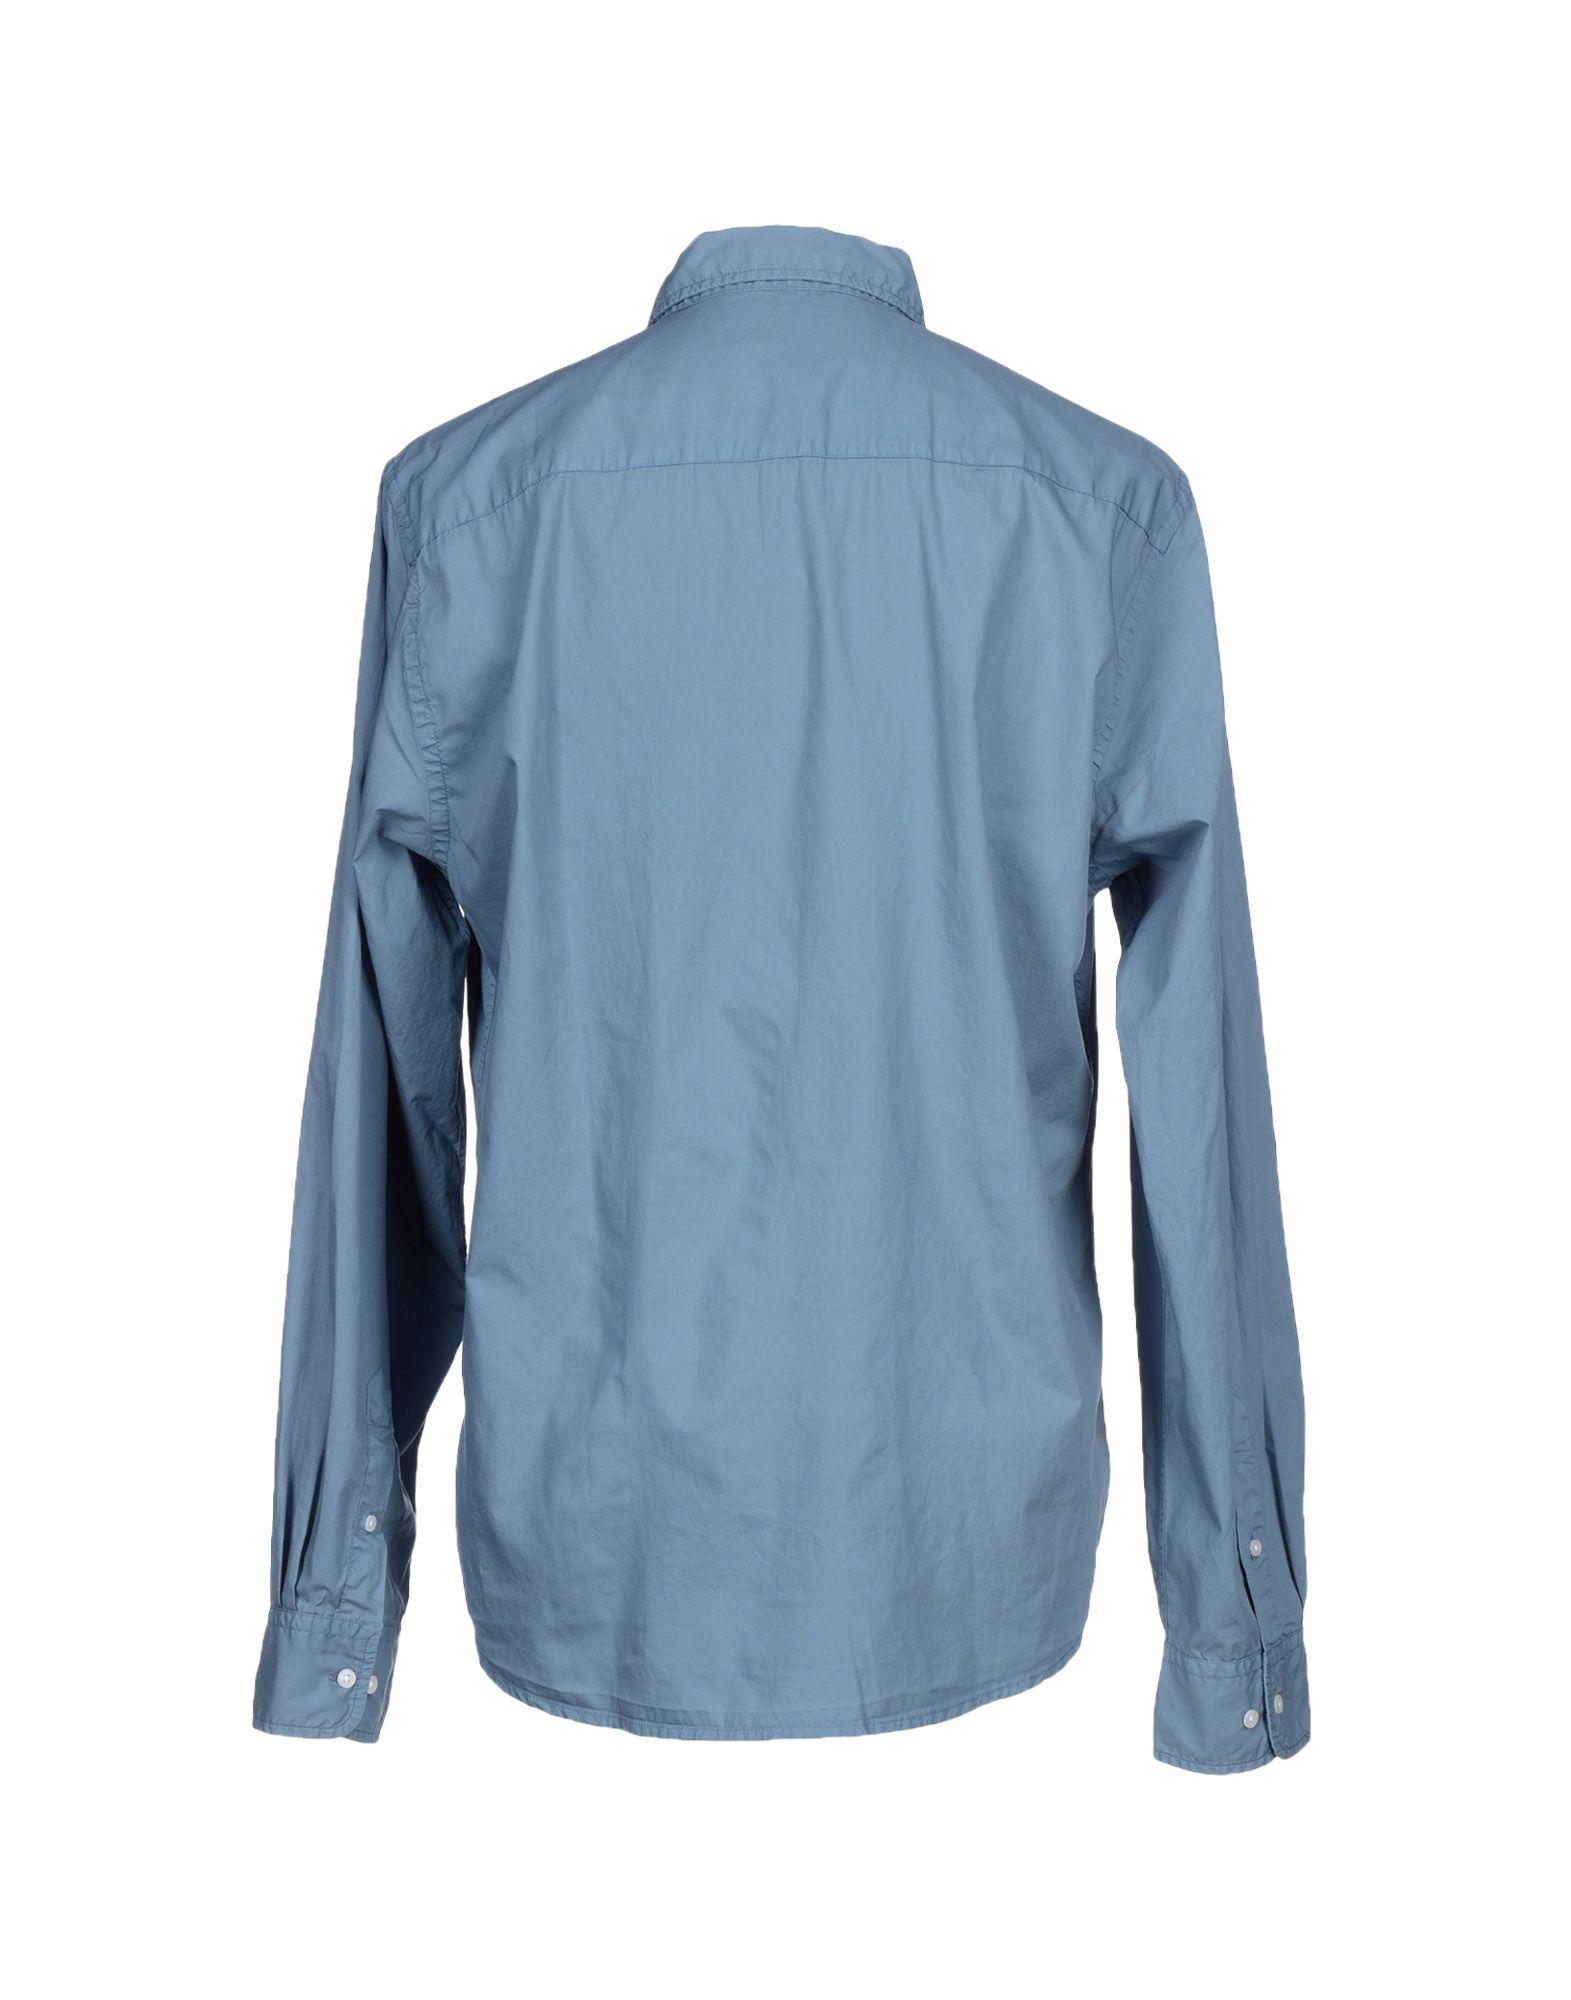 Lyst - B.D. Baggies Shirt in Gray for Men